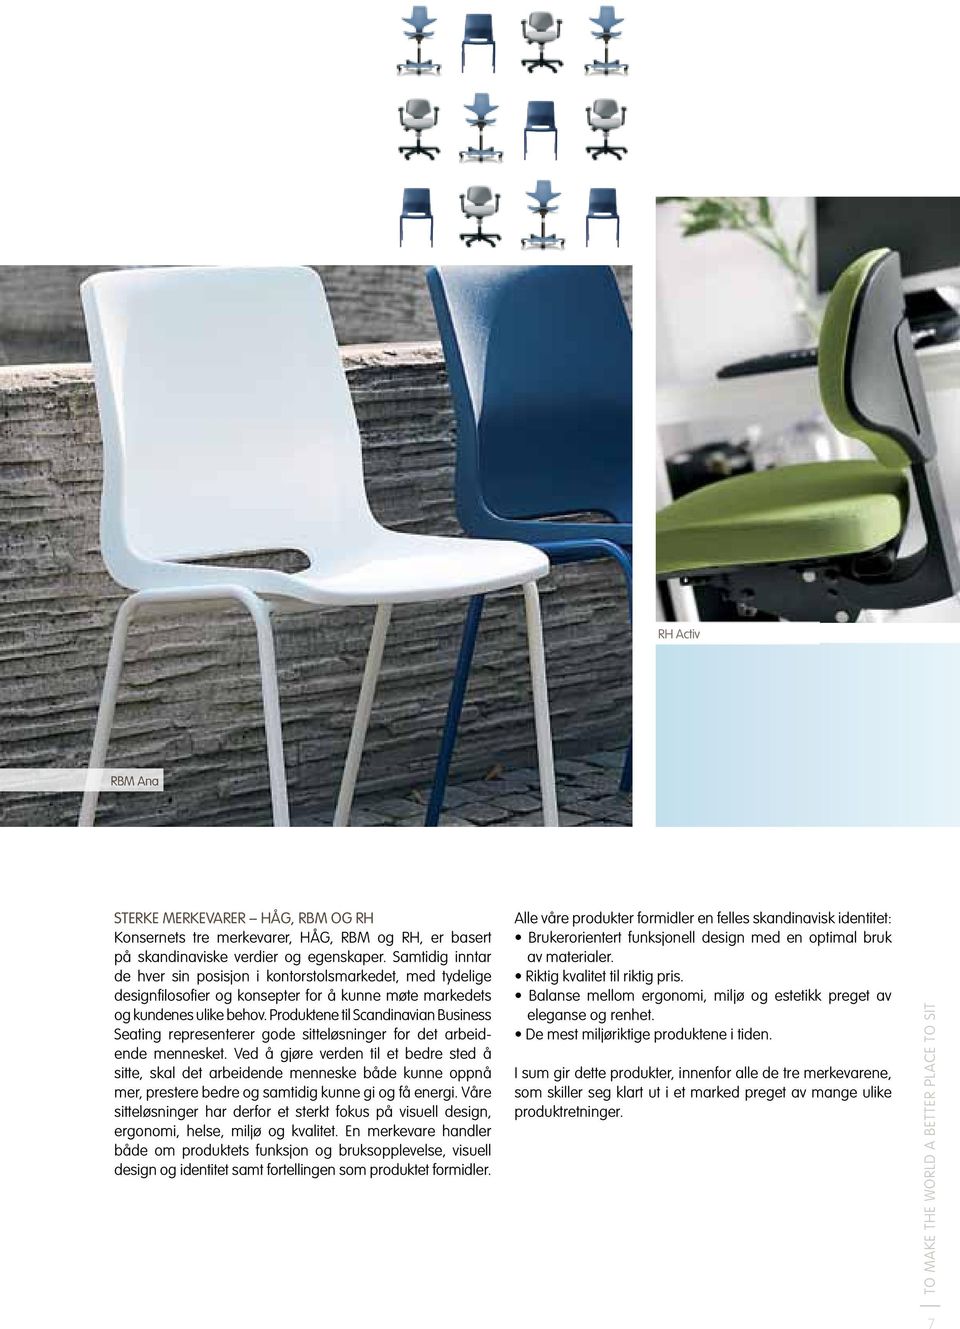 Produktene til Scandinavian Business Seating representerer gode sitteløsninger for det arbeidende mennesket.